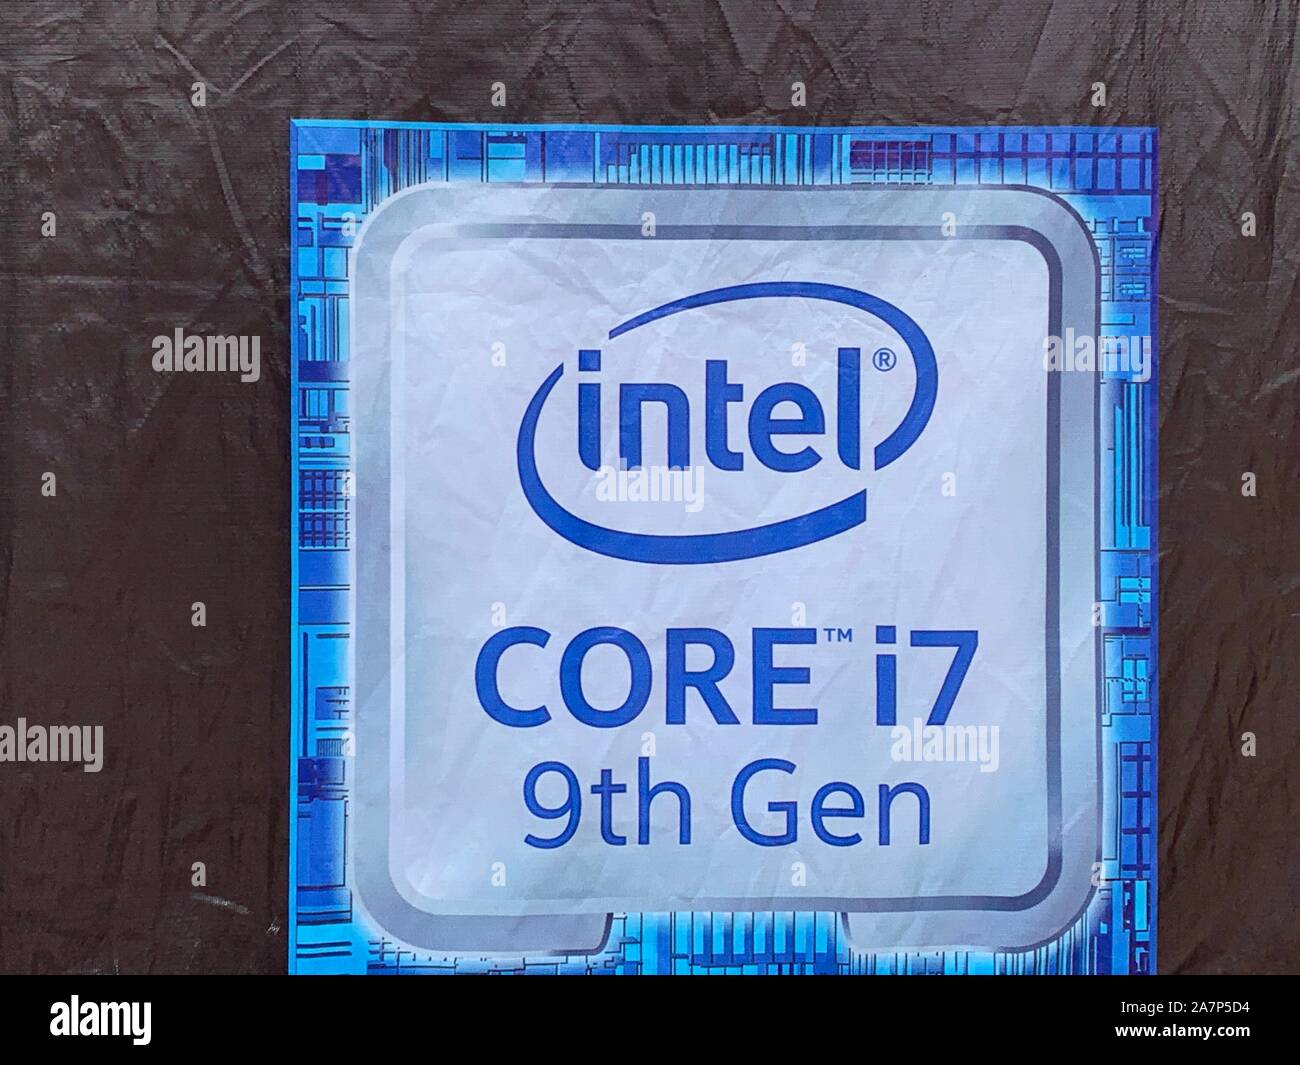 FILE--un logo de 9ème génération Intel Core i7 est vu lors d'une expo à  Wuhan, province du Hubei en Chine centrale, 16 juin 2019. L'United States  Photo Stock - Alamy